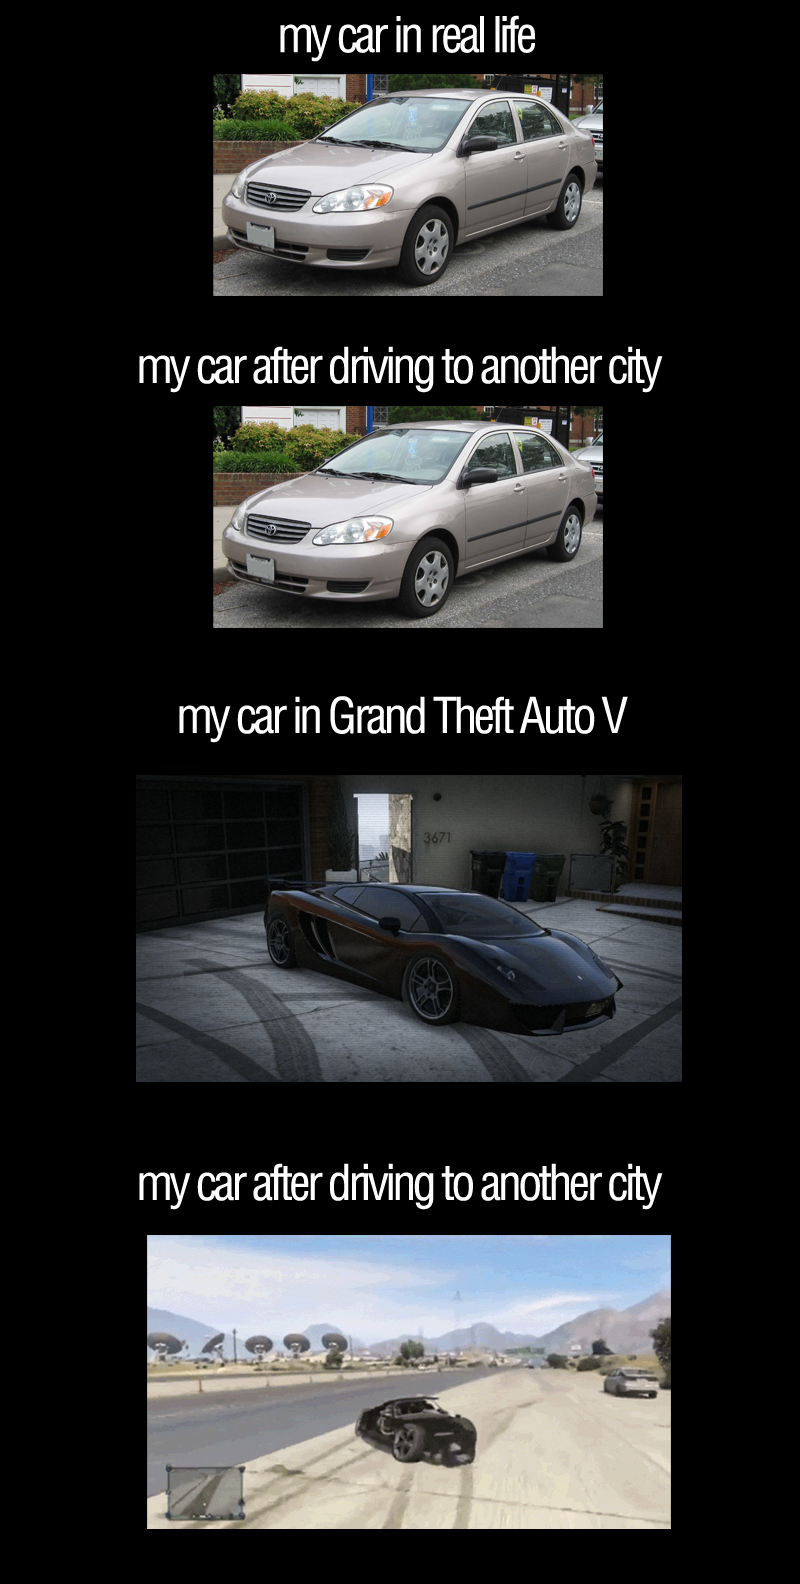 GTA V vs. reality